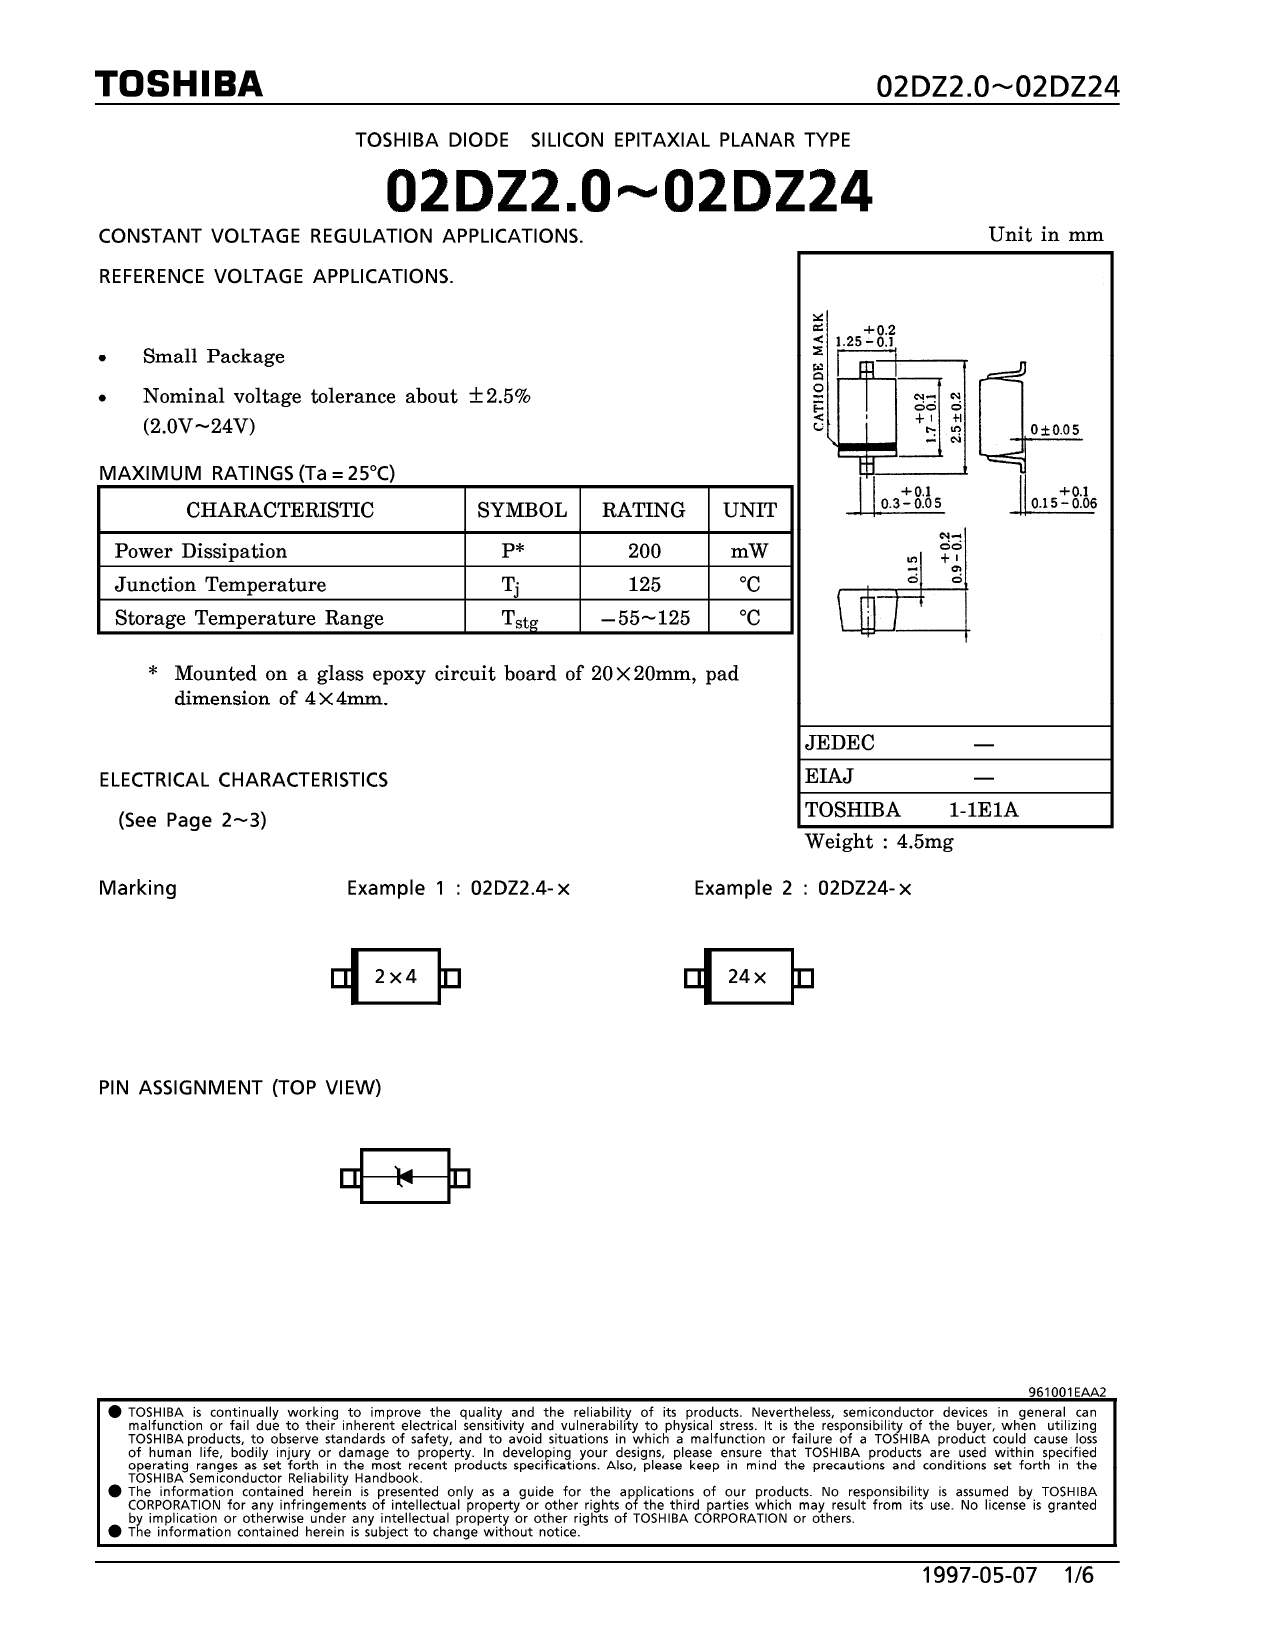 02DZ20 datasheet, circuit